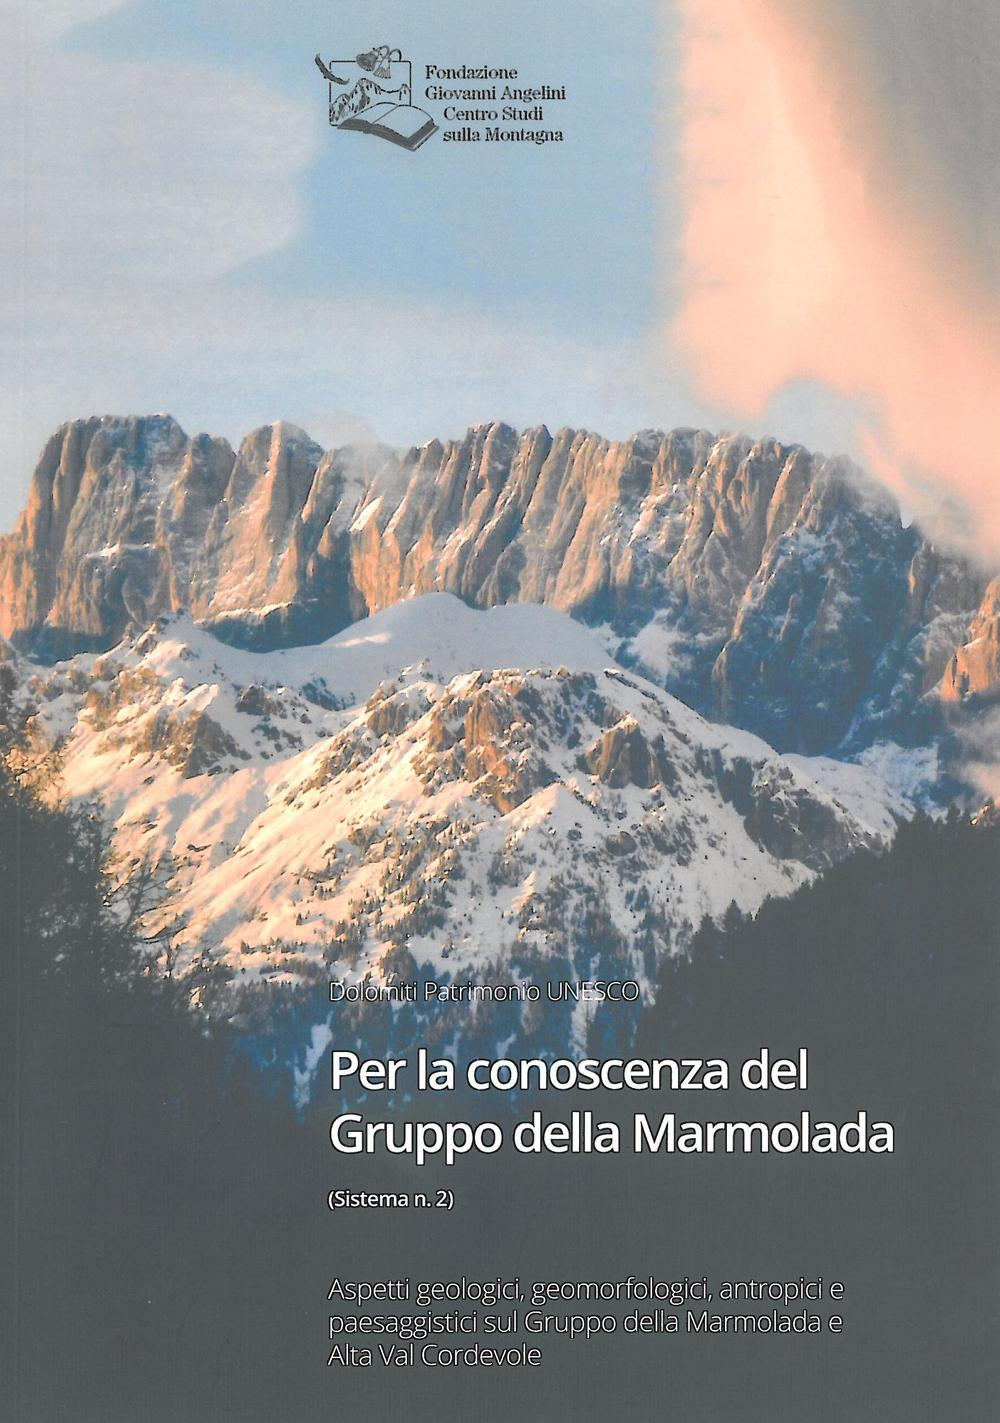 Image of Per la conoscenza del Gruppo della Marmolada. Aspetti geologici, geomorfologici, antropici e paesaggistici sul Gruppo della Marmolada e Alta Val Cordevole